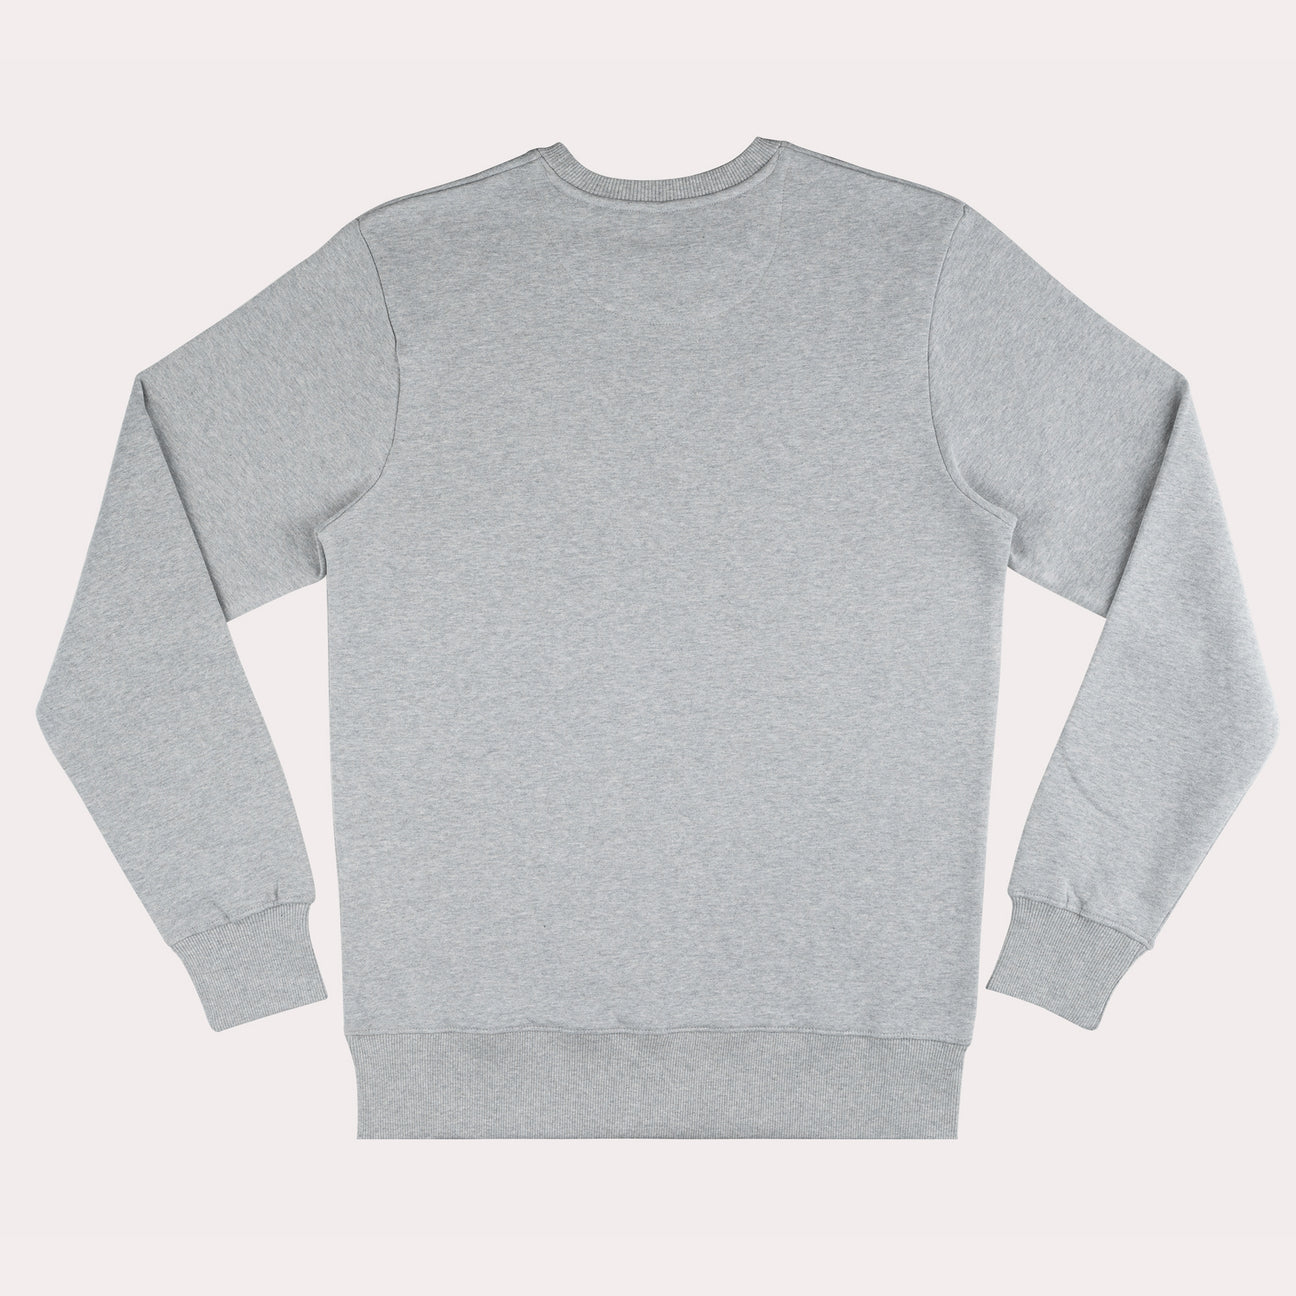 Adult Sweatshirt Grey